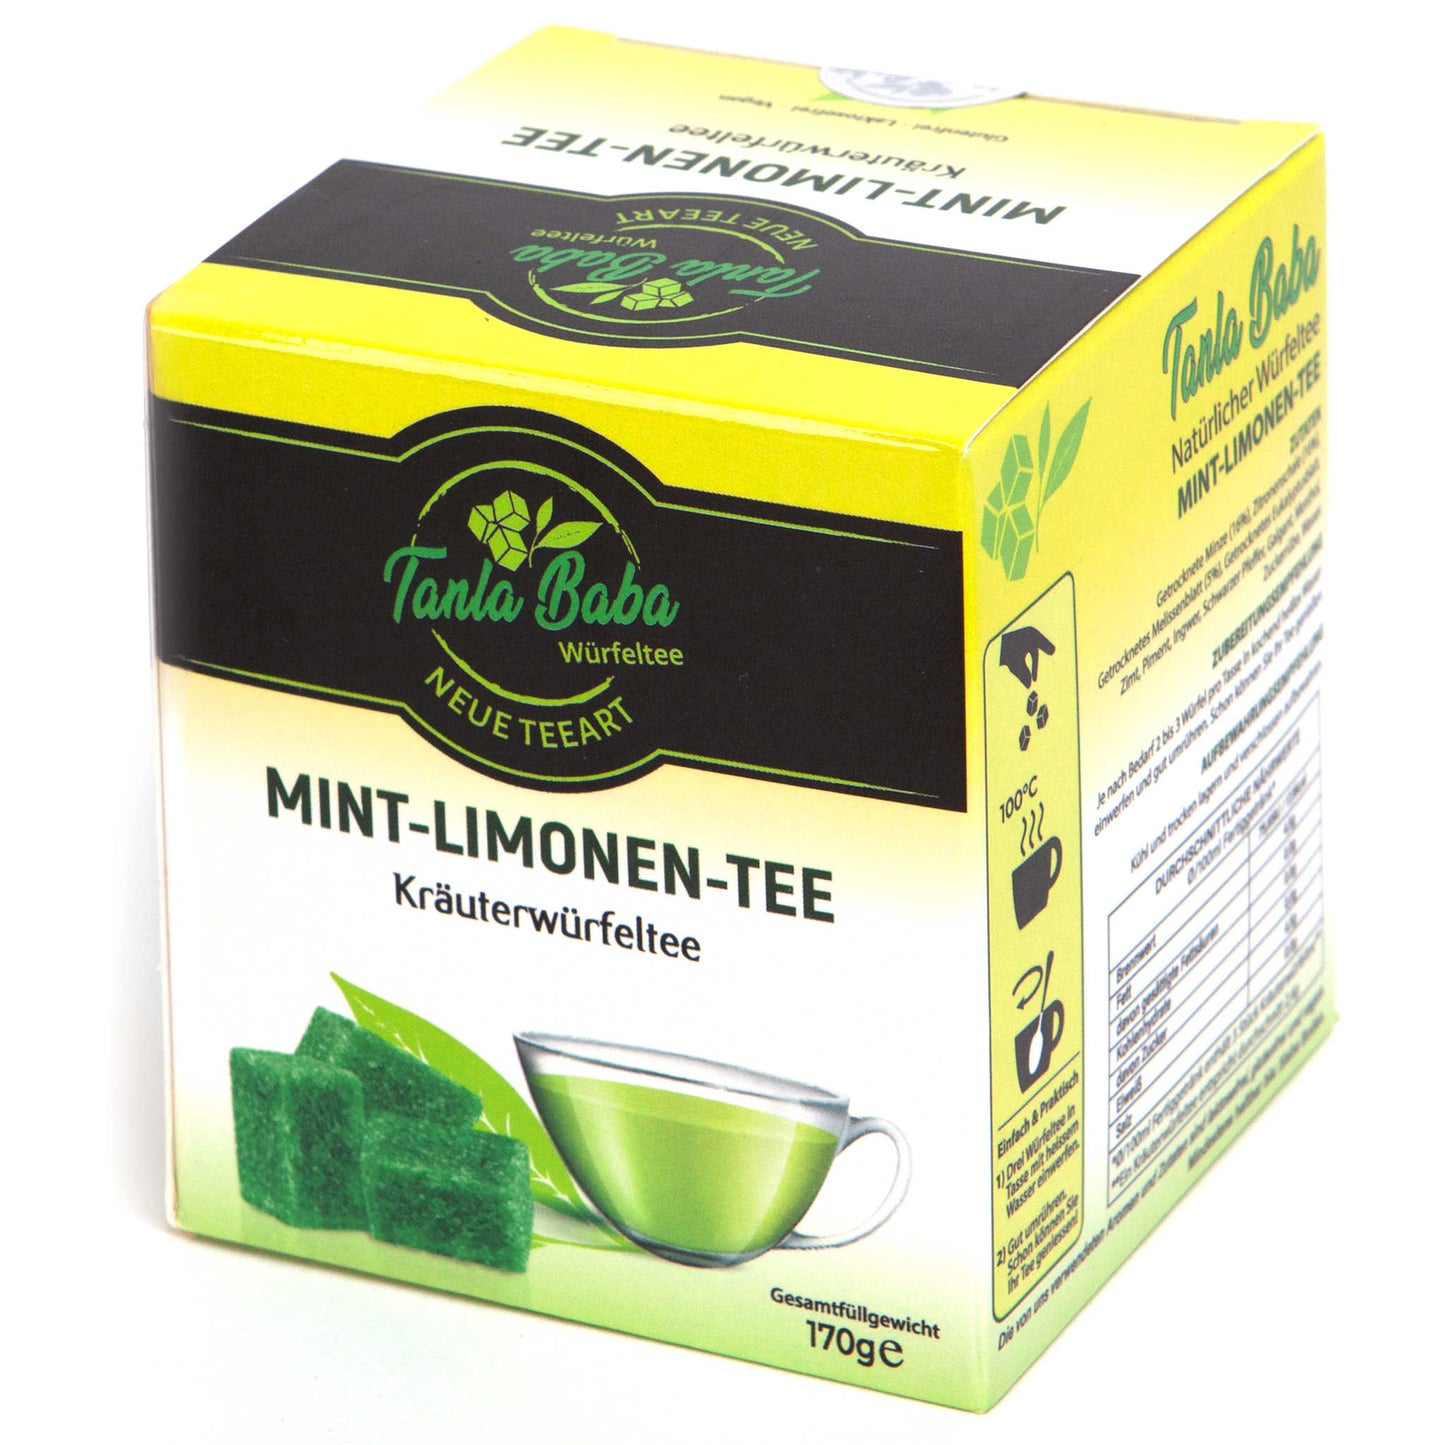 
                  
                    Mint-Limonen-Tee
                  
                